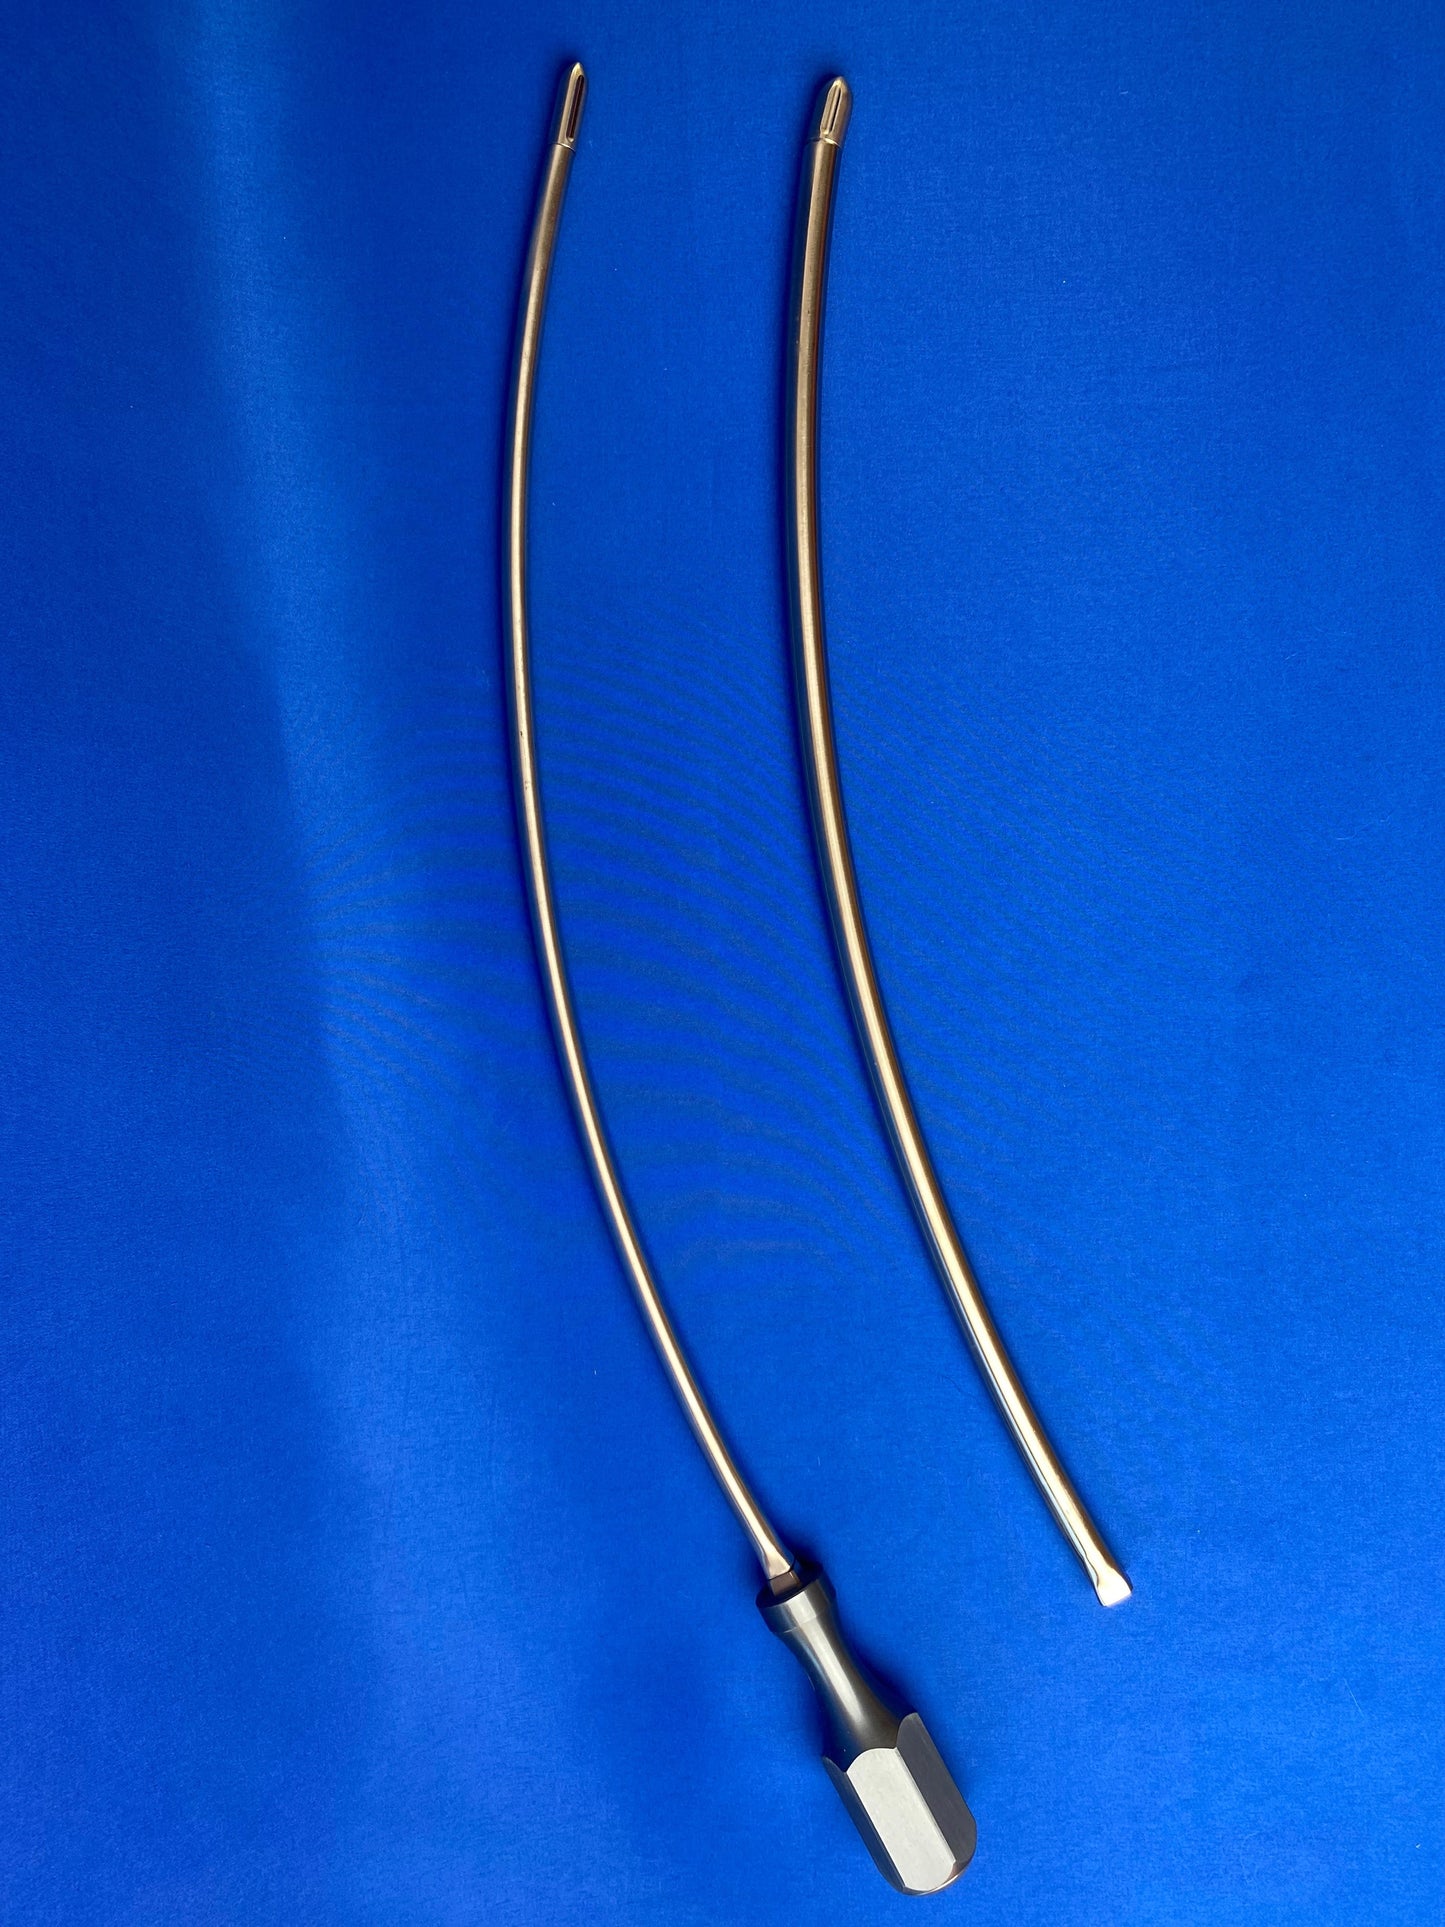 6 and 8mm Slight Curve 50cm Vascular Tunneler Kit